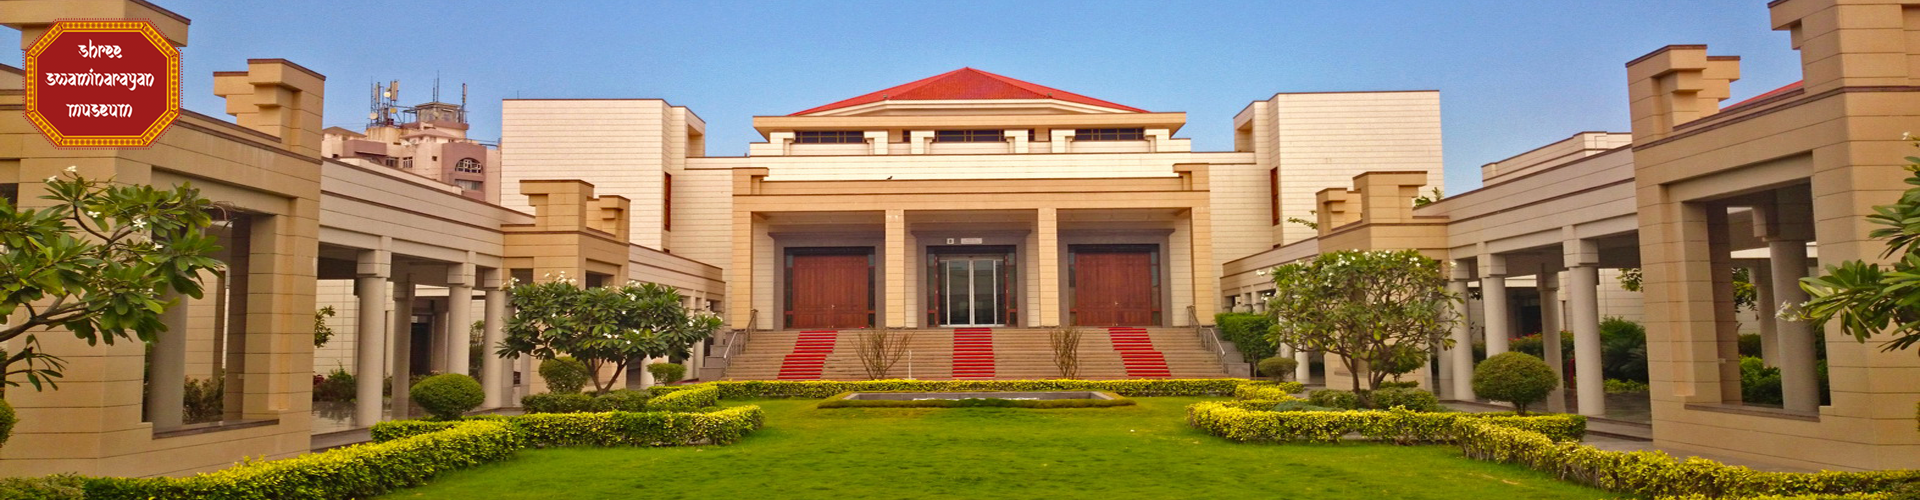 Shree Swaminarayan Mandir Kota (Rajasthan) = Murti Prathishta Mahotsav - Kalupur Mandir